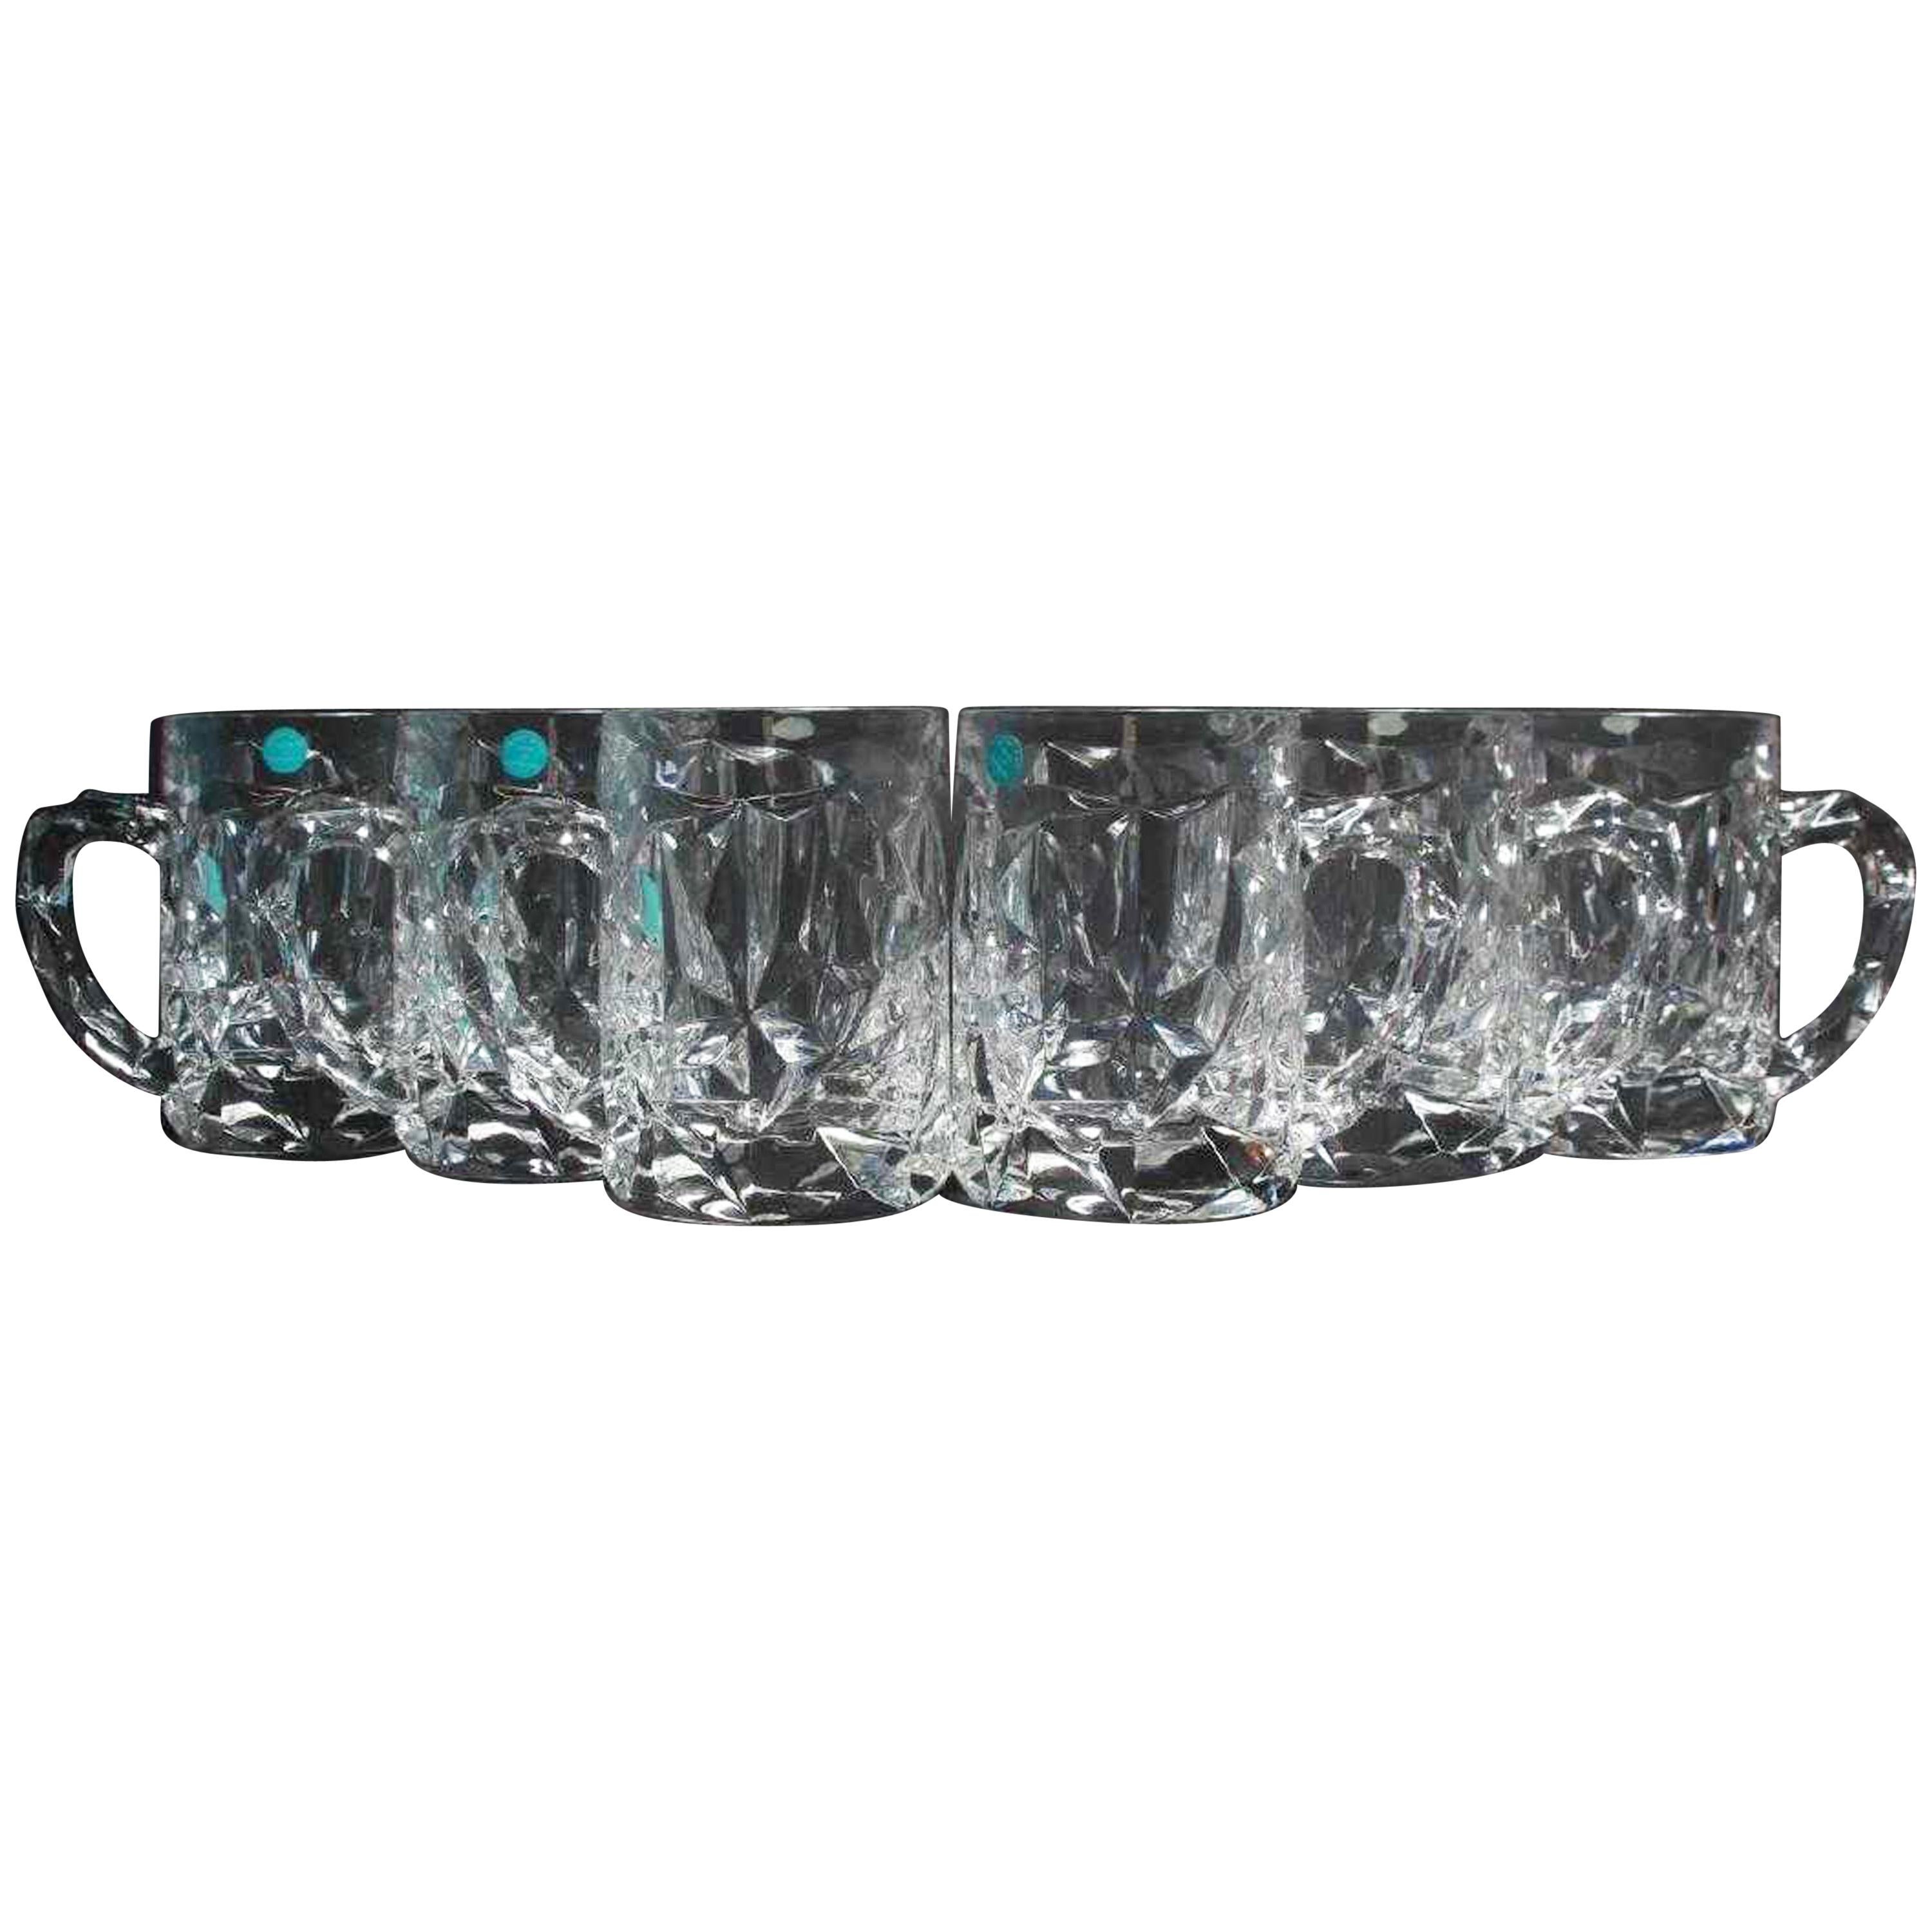 6 Tiffany & Co. Crystal Beer Mugs